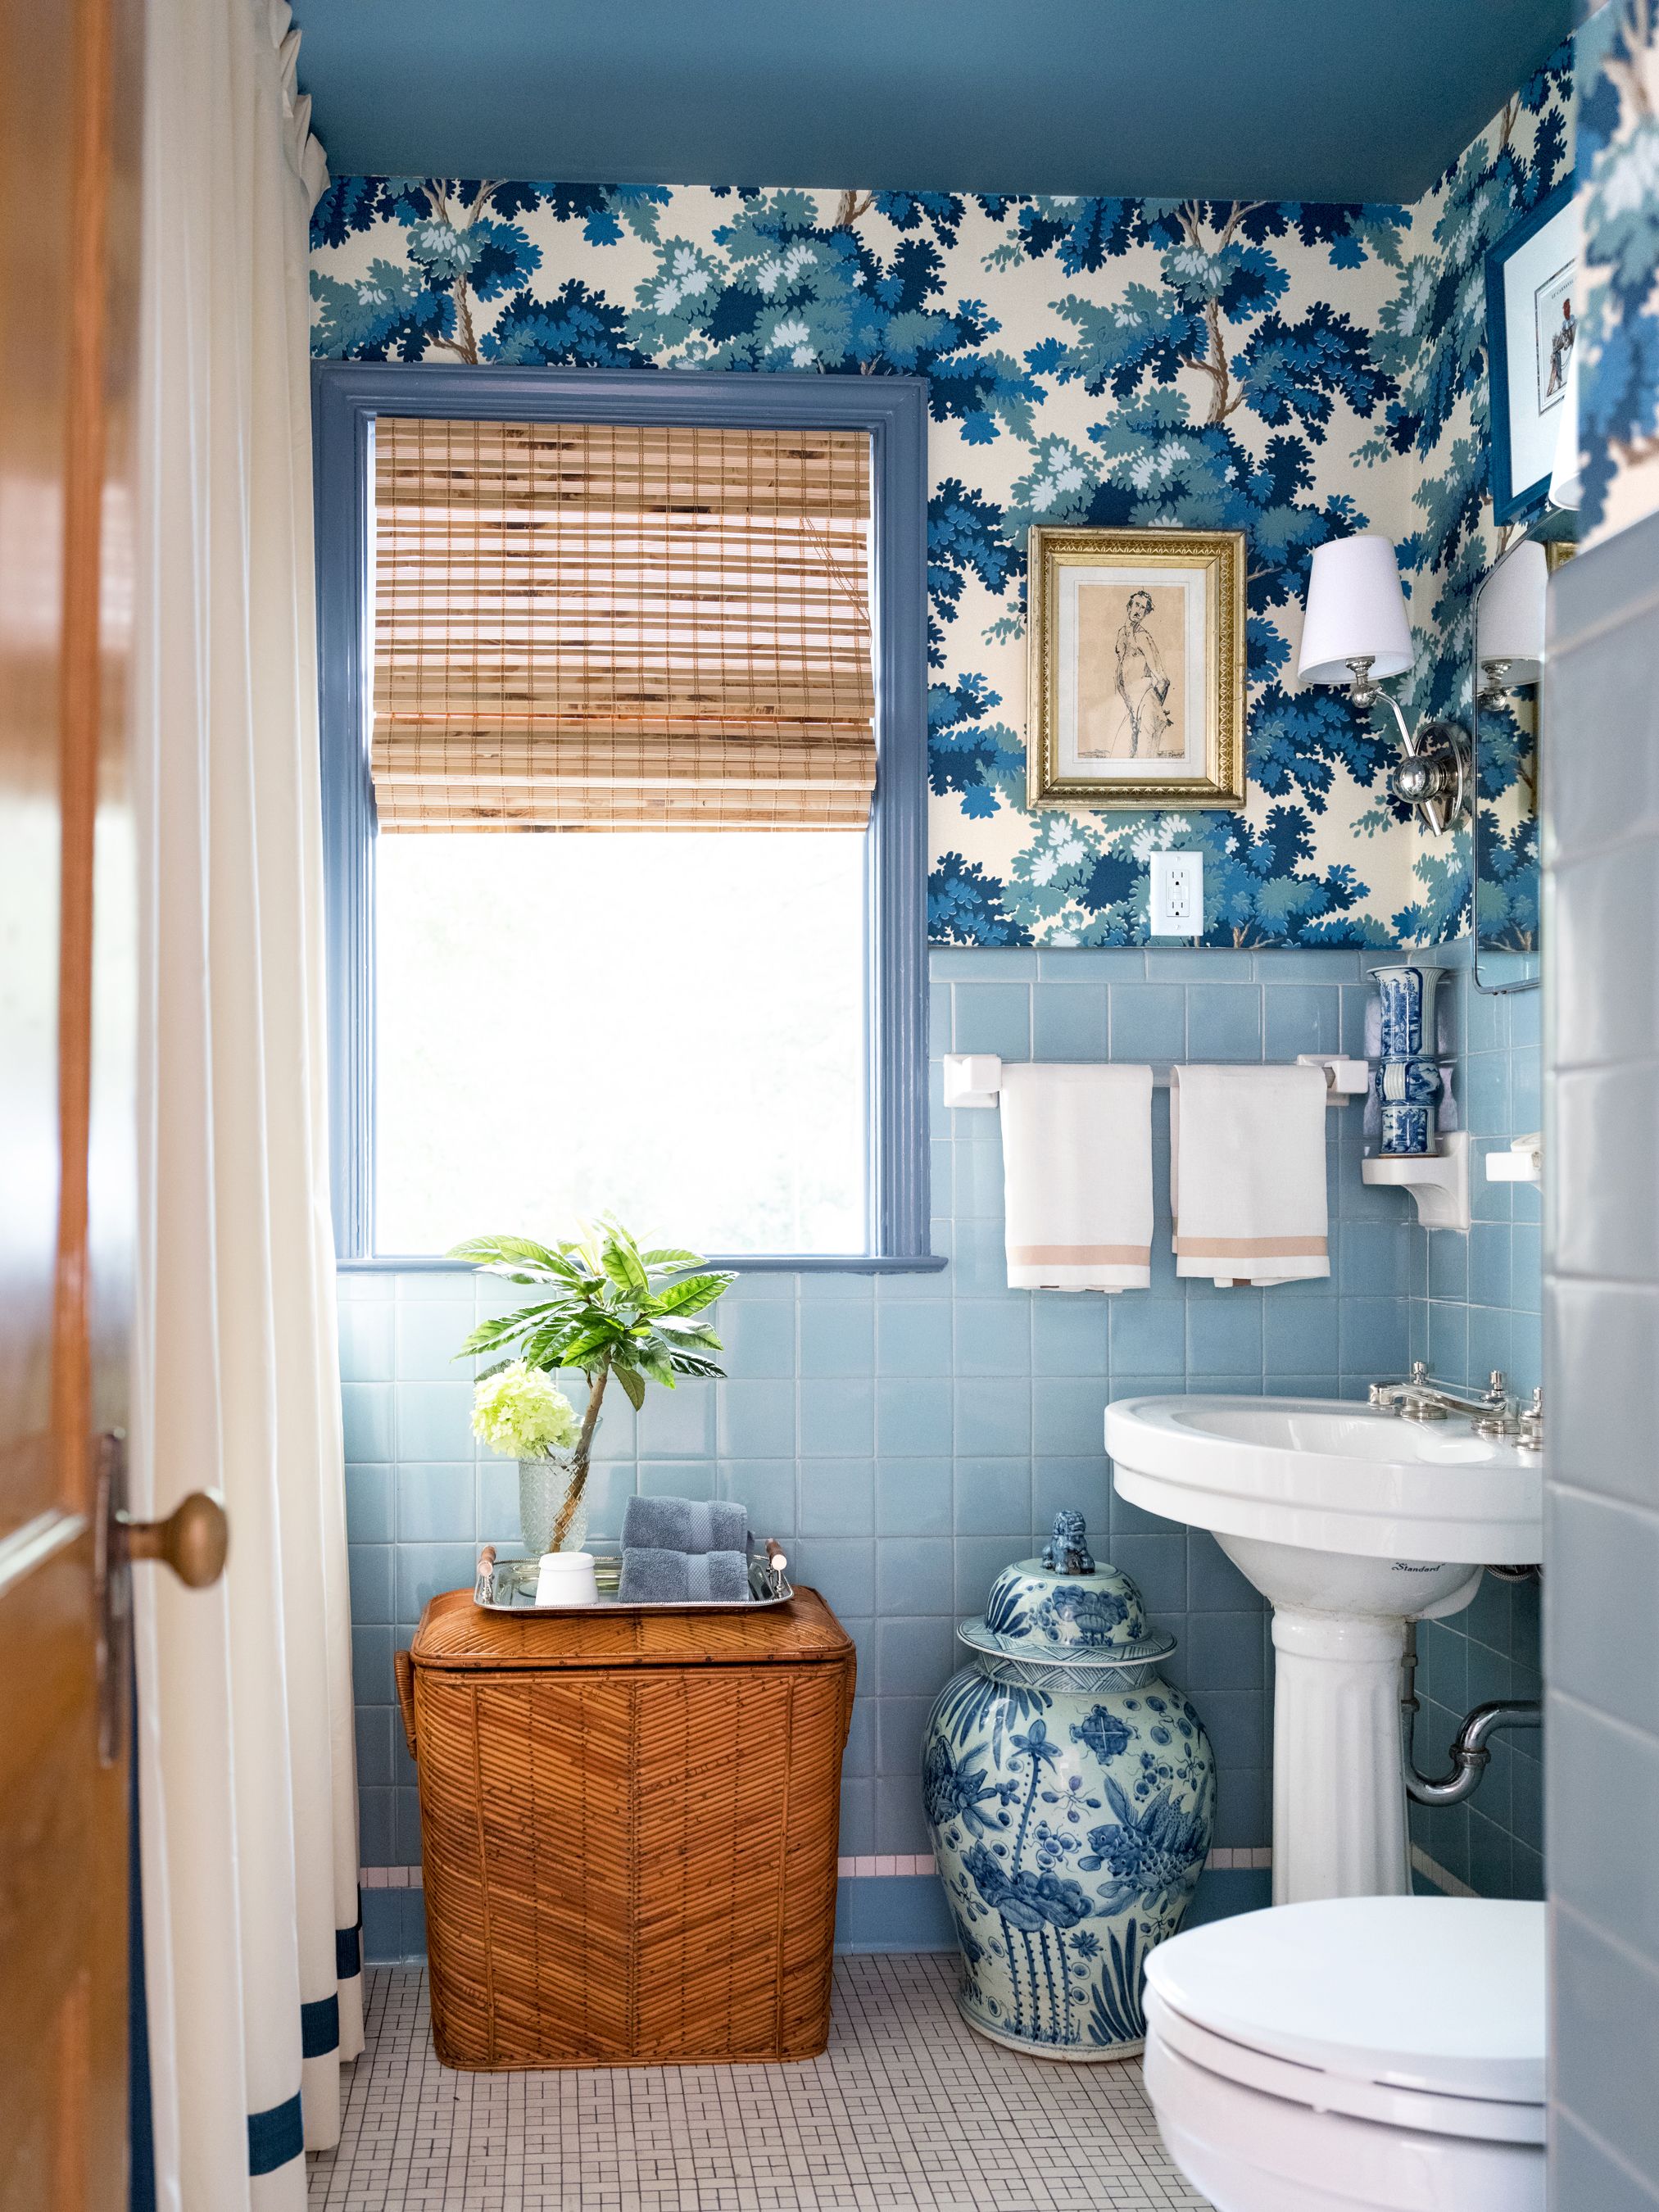 48 Bathroom Tile Ideas Bath, Bathroom With Blue Tile